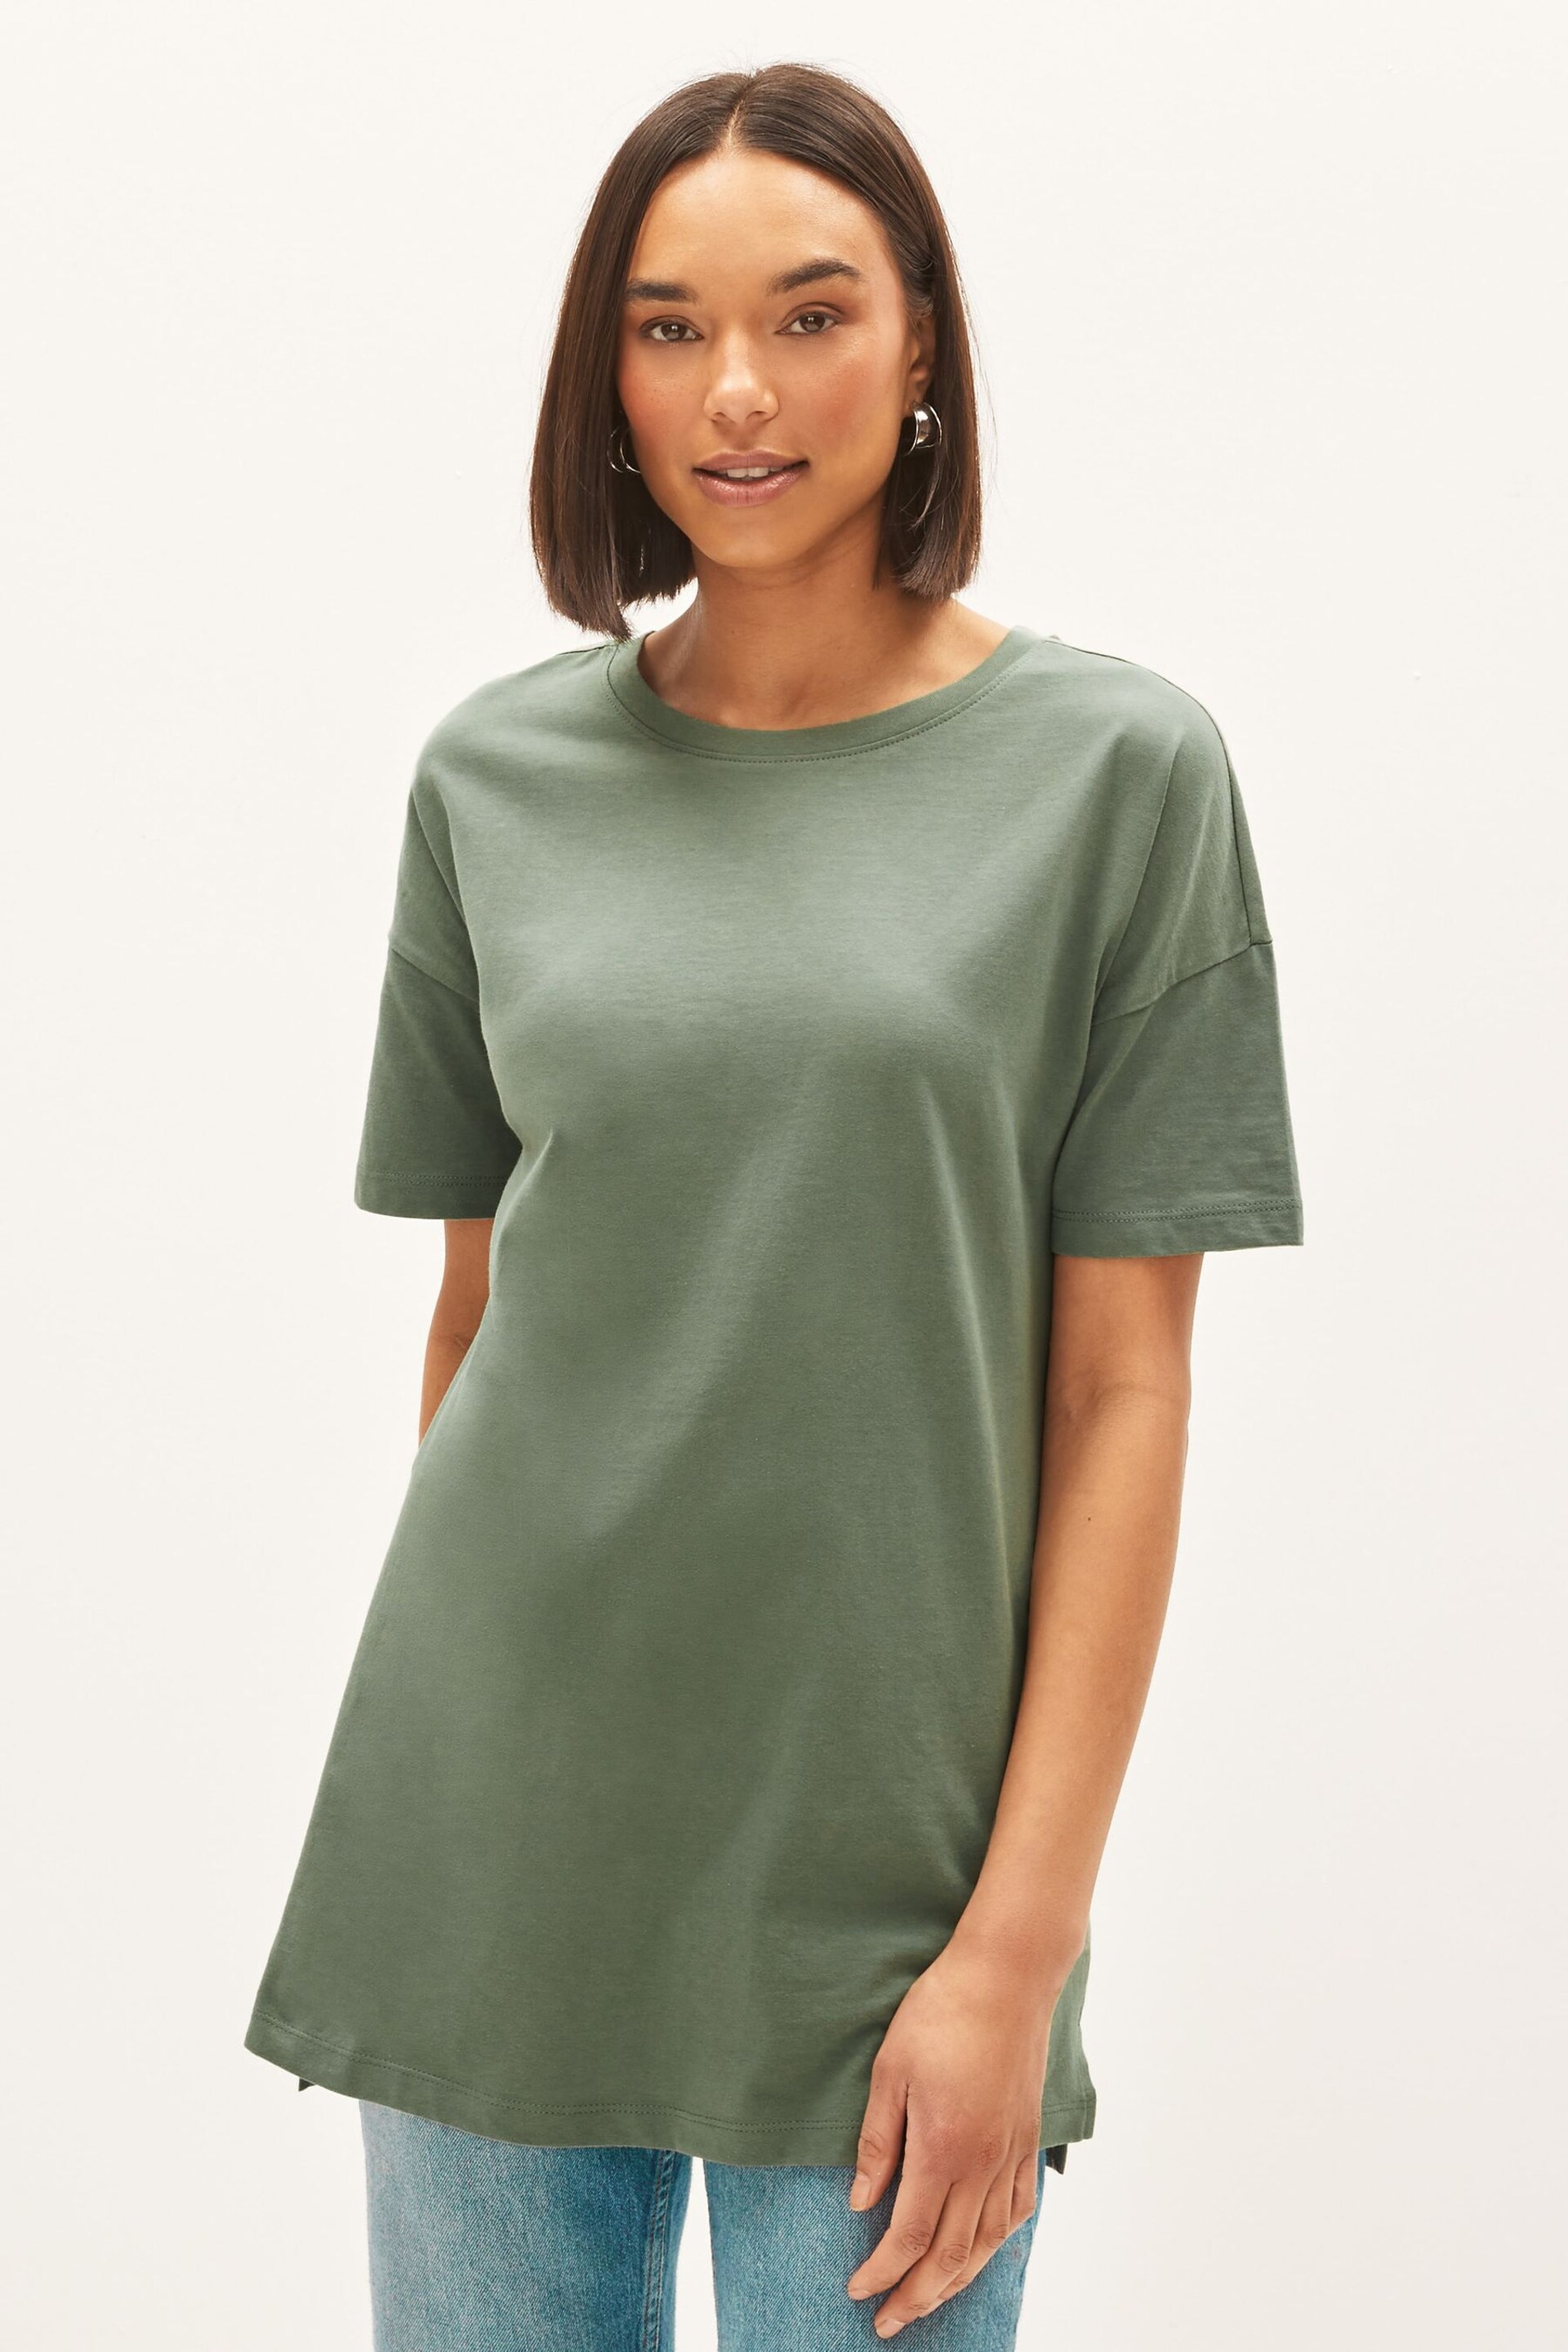 Khaki Green Oversized T-Shirt - Image 1 of 4